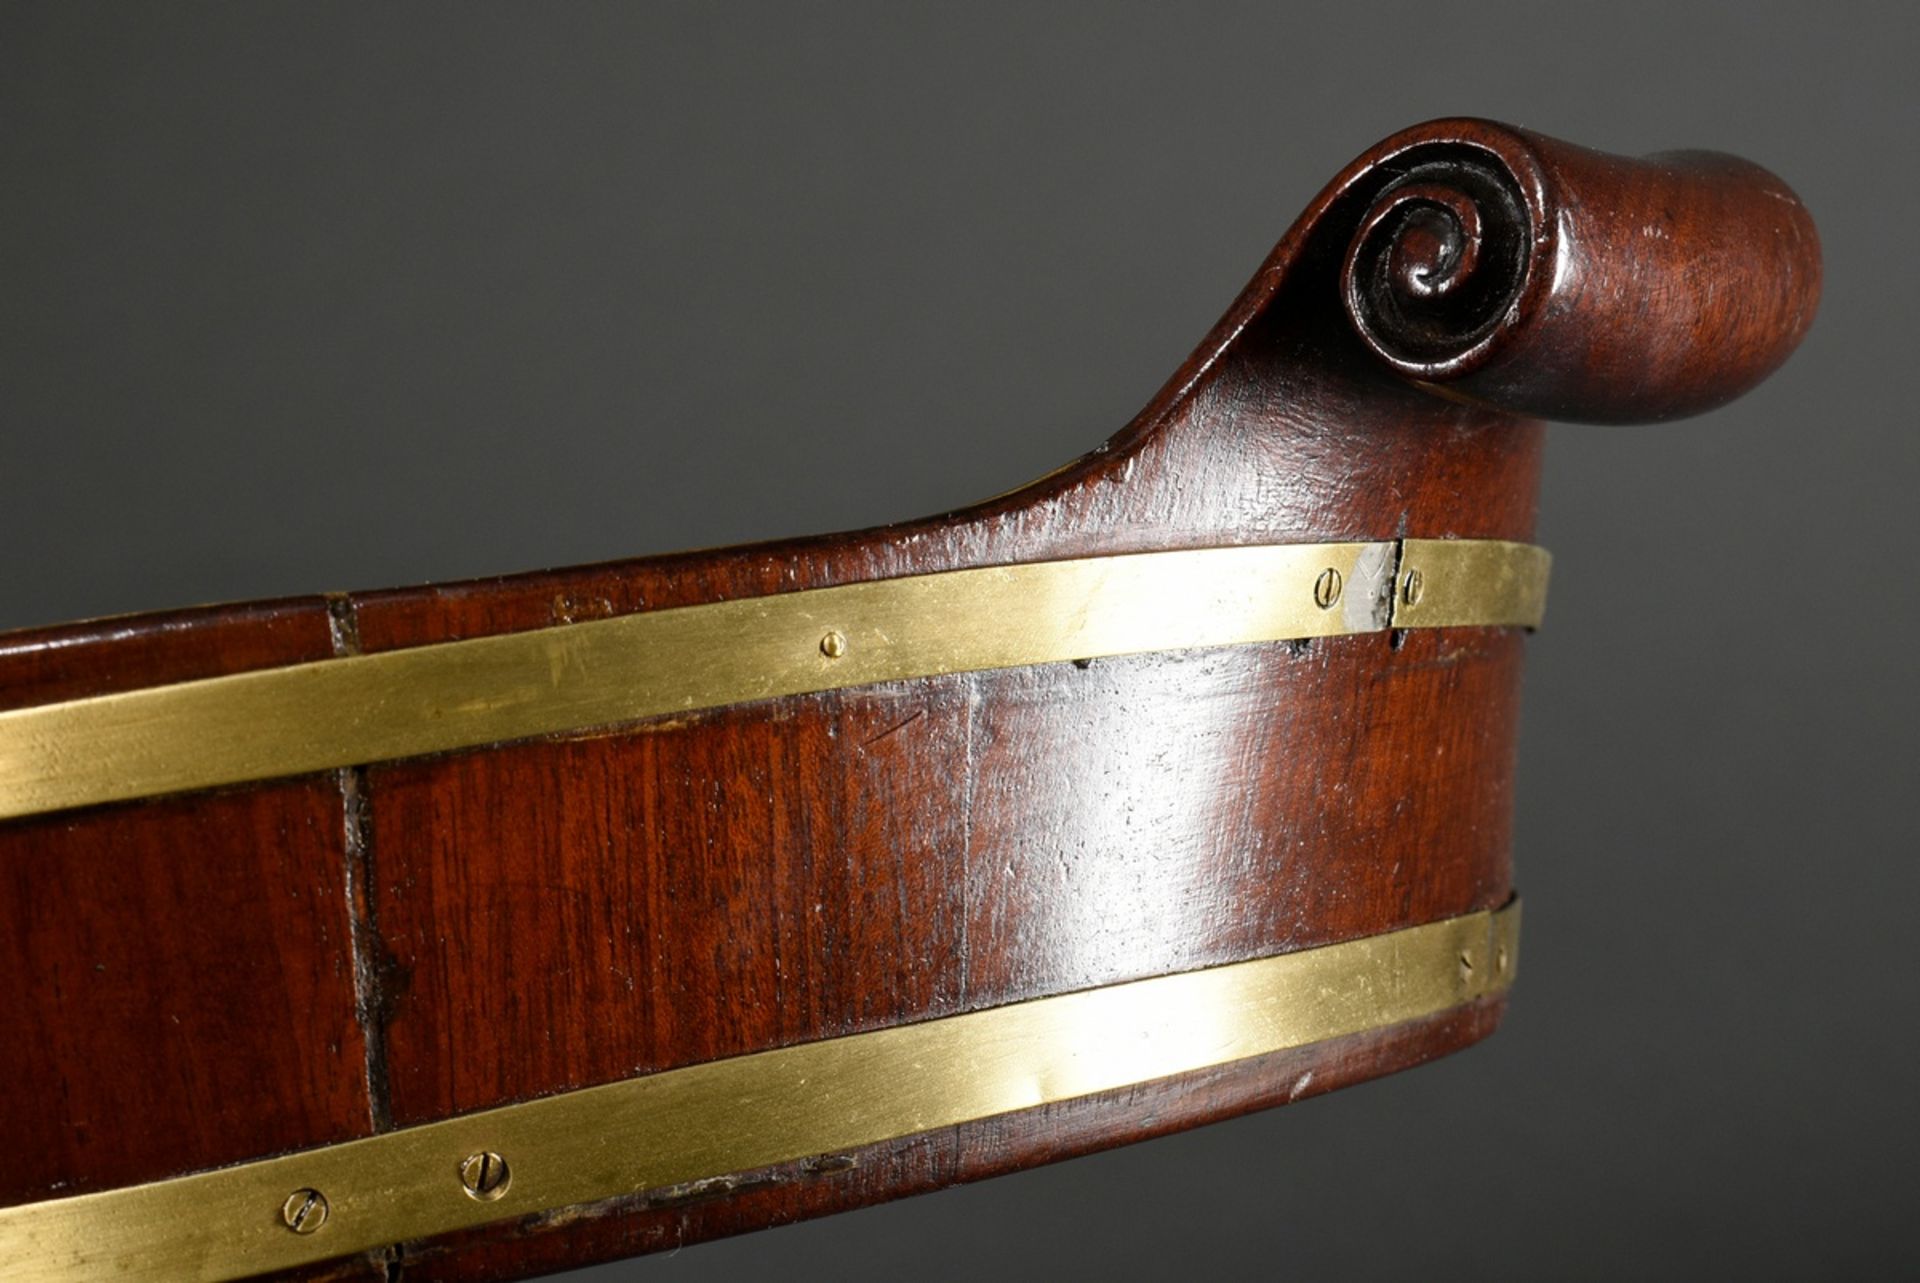 Ovales Mahagoni Tablett mit umlaufenden Messingbändern und Volutengriffen, England 19.Jh., 62x40cm, - Bild 2 aus 3